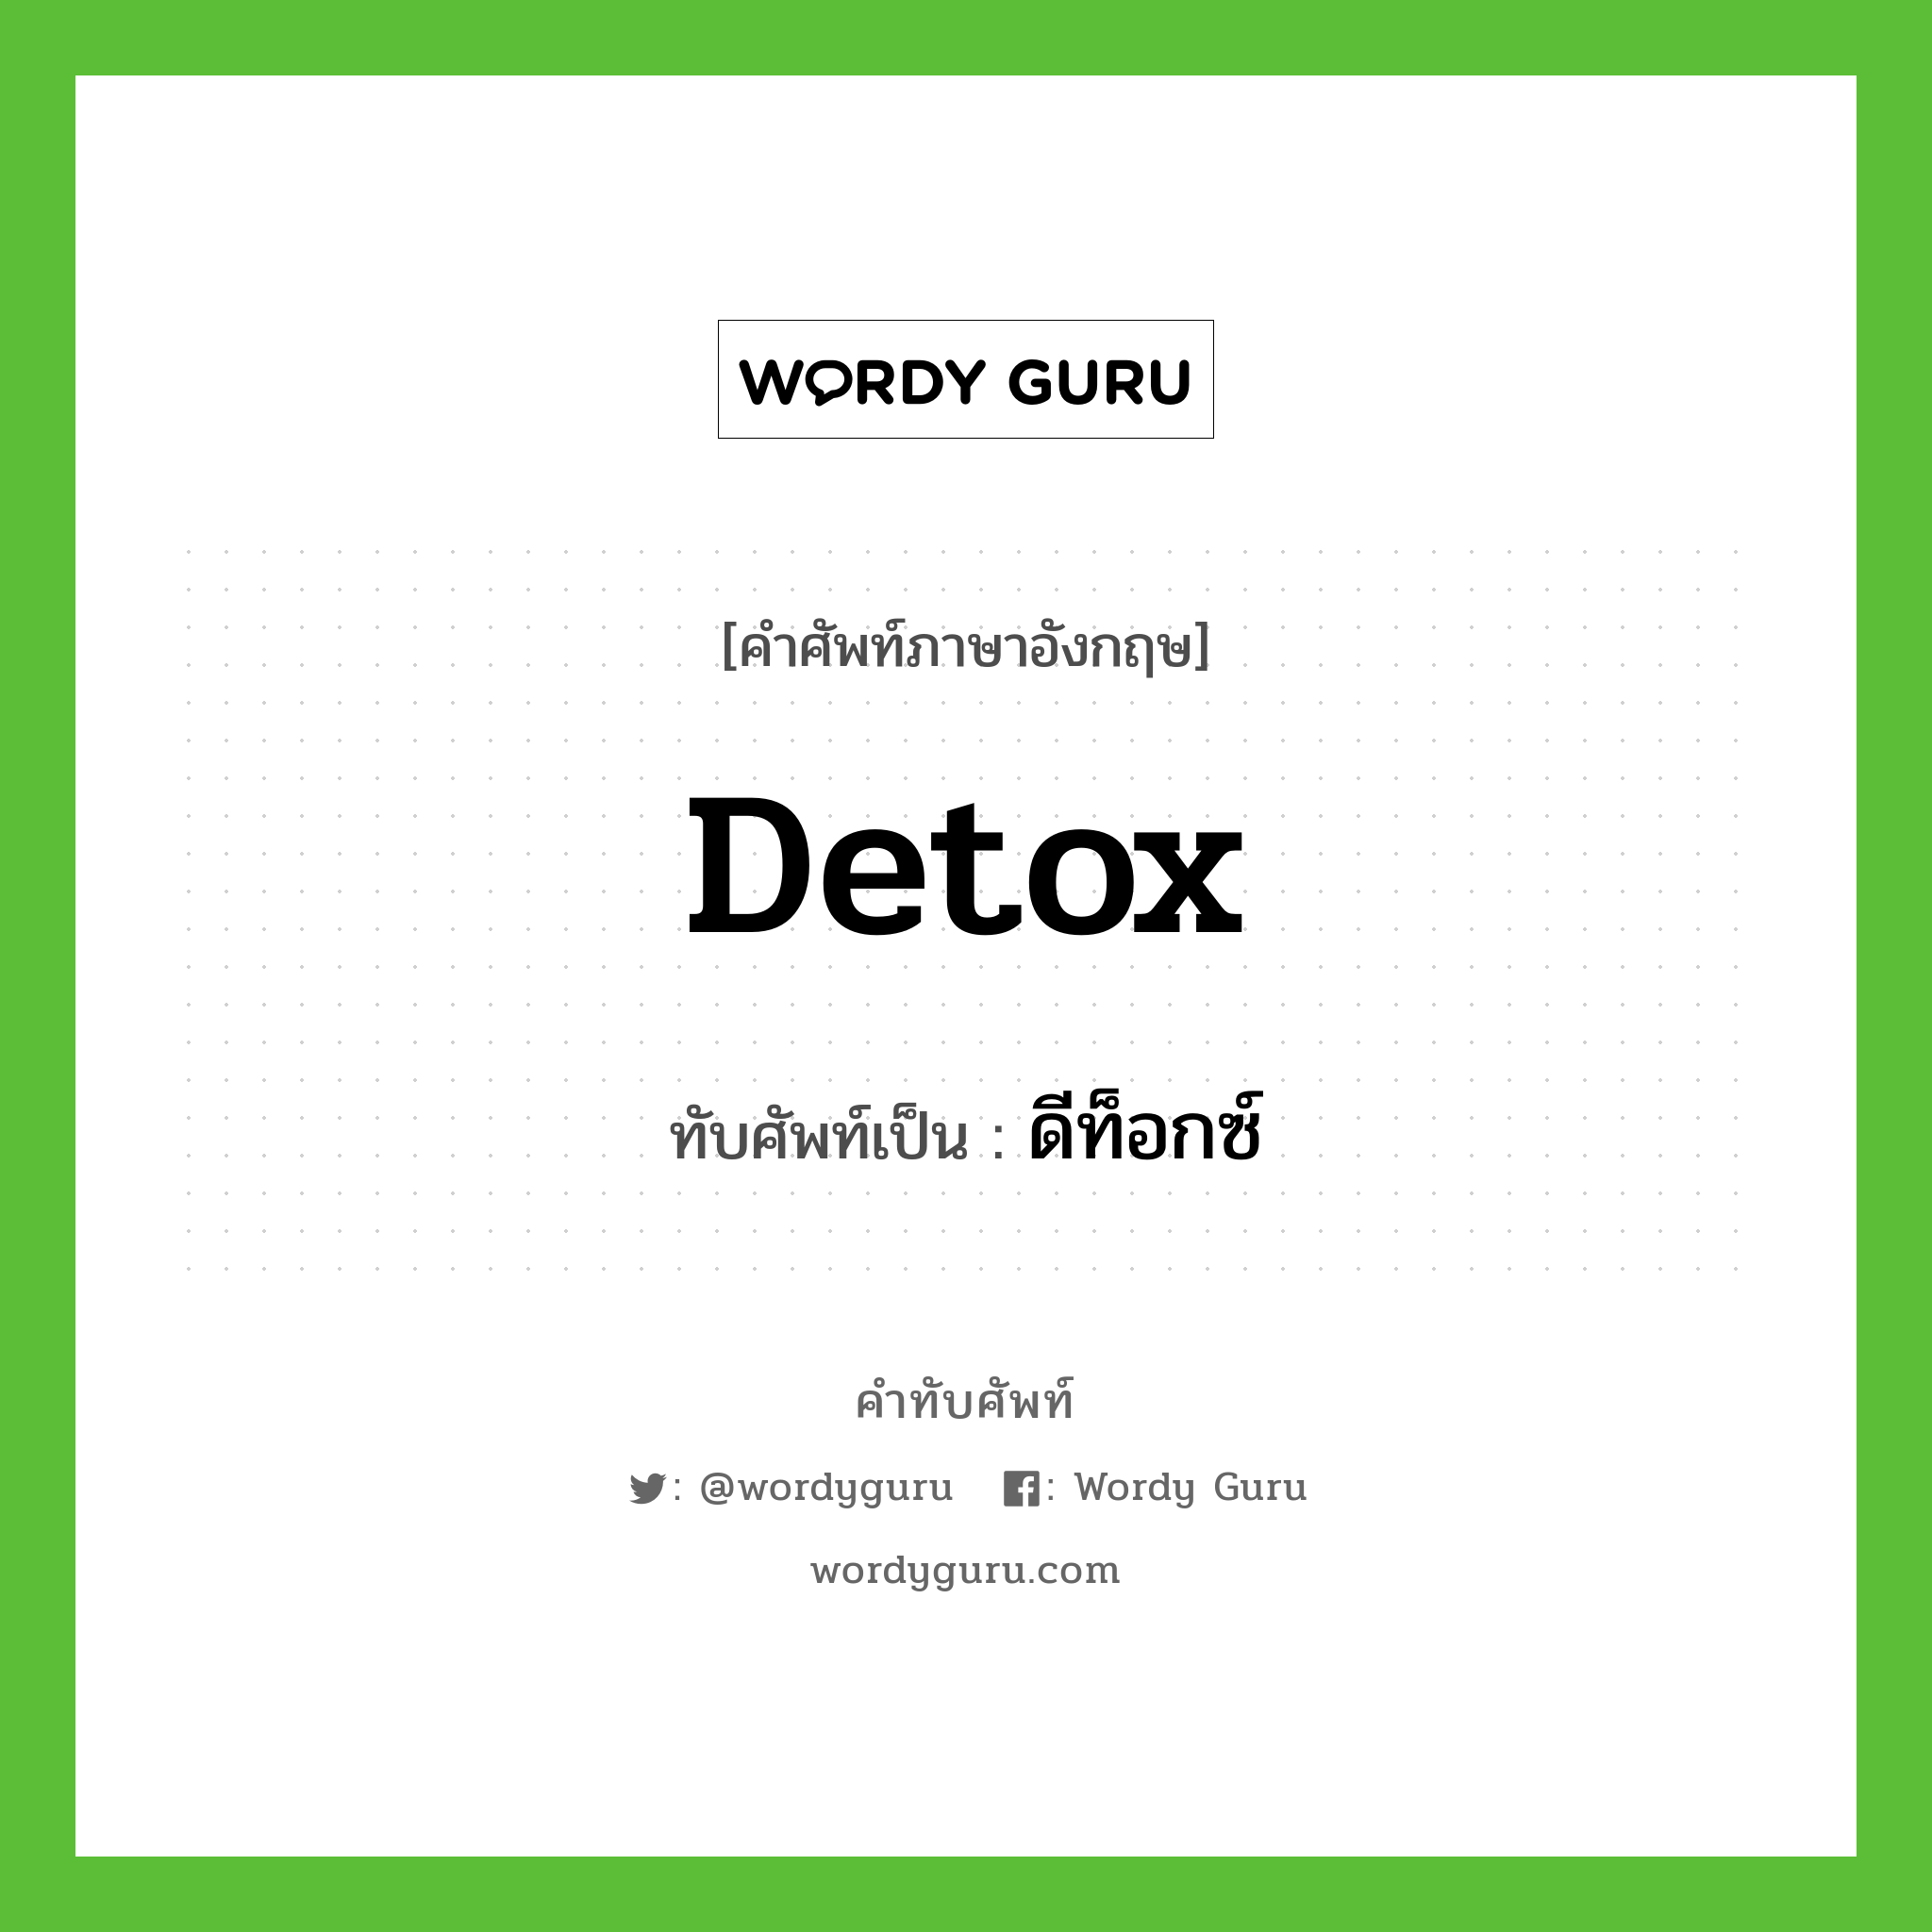 detox เขียนเป็นคำไทยว่าอะไร?, คำศัพท์ภาษาอังกฤษ detox ทับศัพท์เป็น ดีท็อกซ์